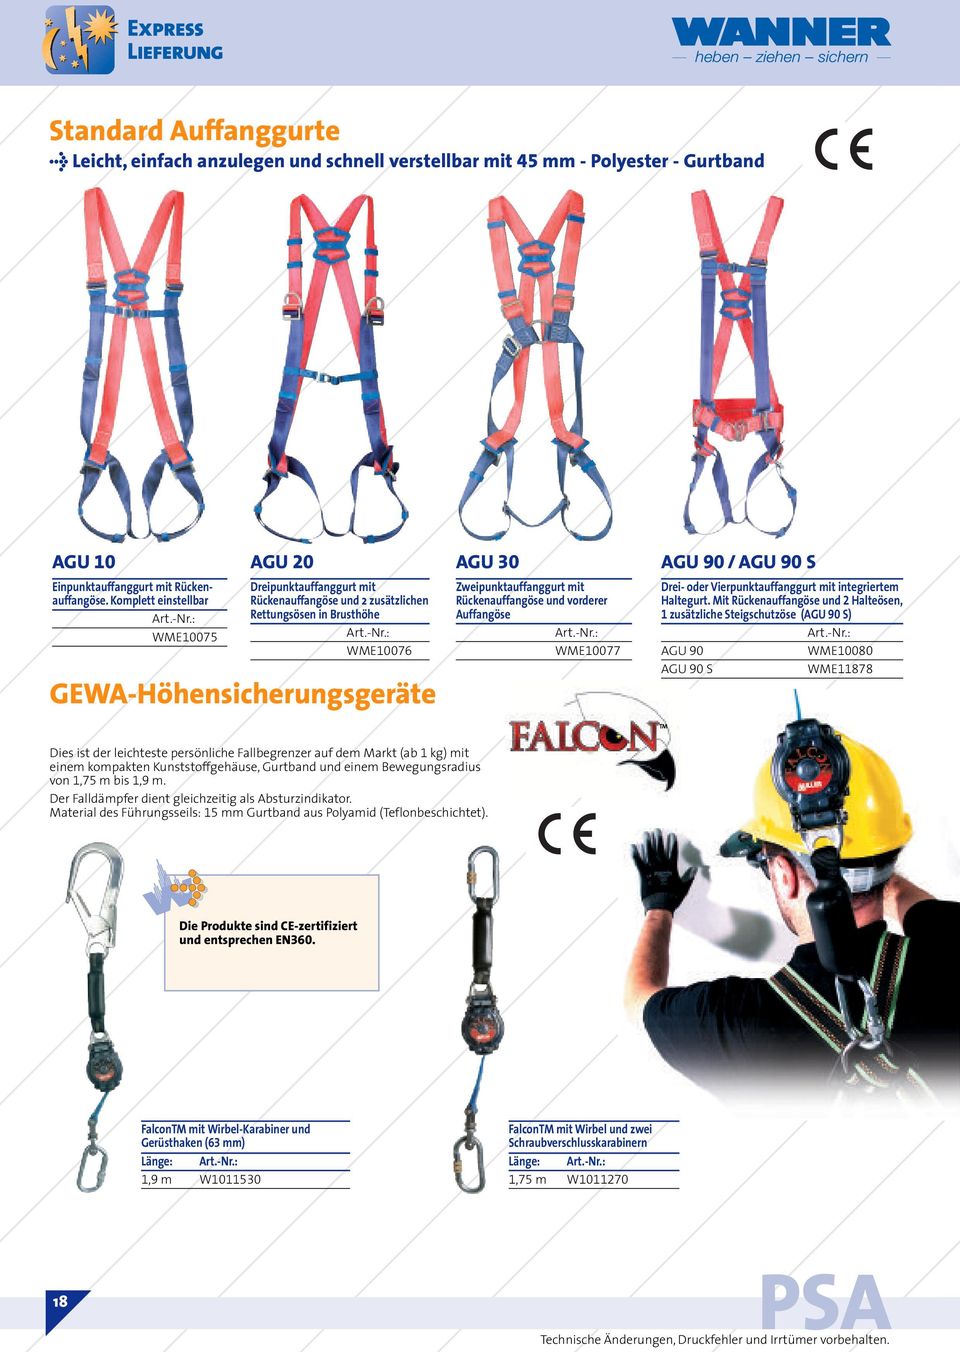 : WME10076 GEWA-Höhensicherungsgeräte AGU 30 Zweipunktauffanggurt mit Rückenauffangöse und vorderer Auffangöse Art.-Nr.